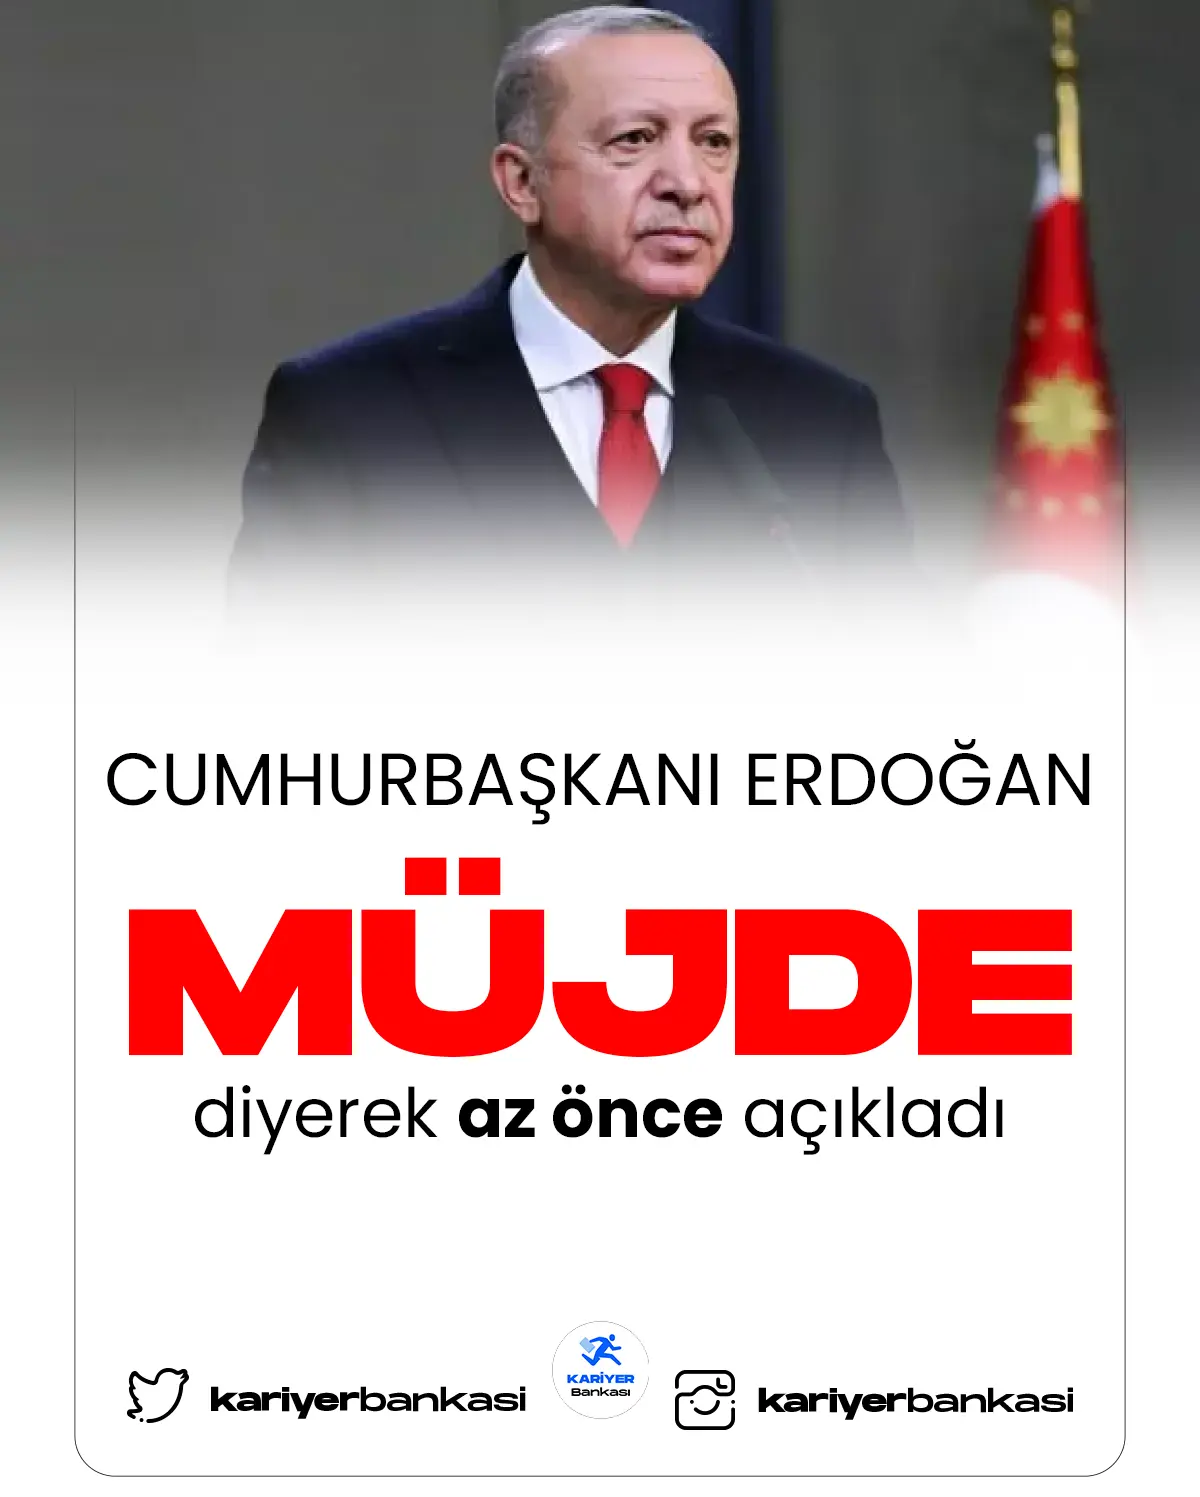 Cumhurbaşkanı Erdoğan son dakika